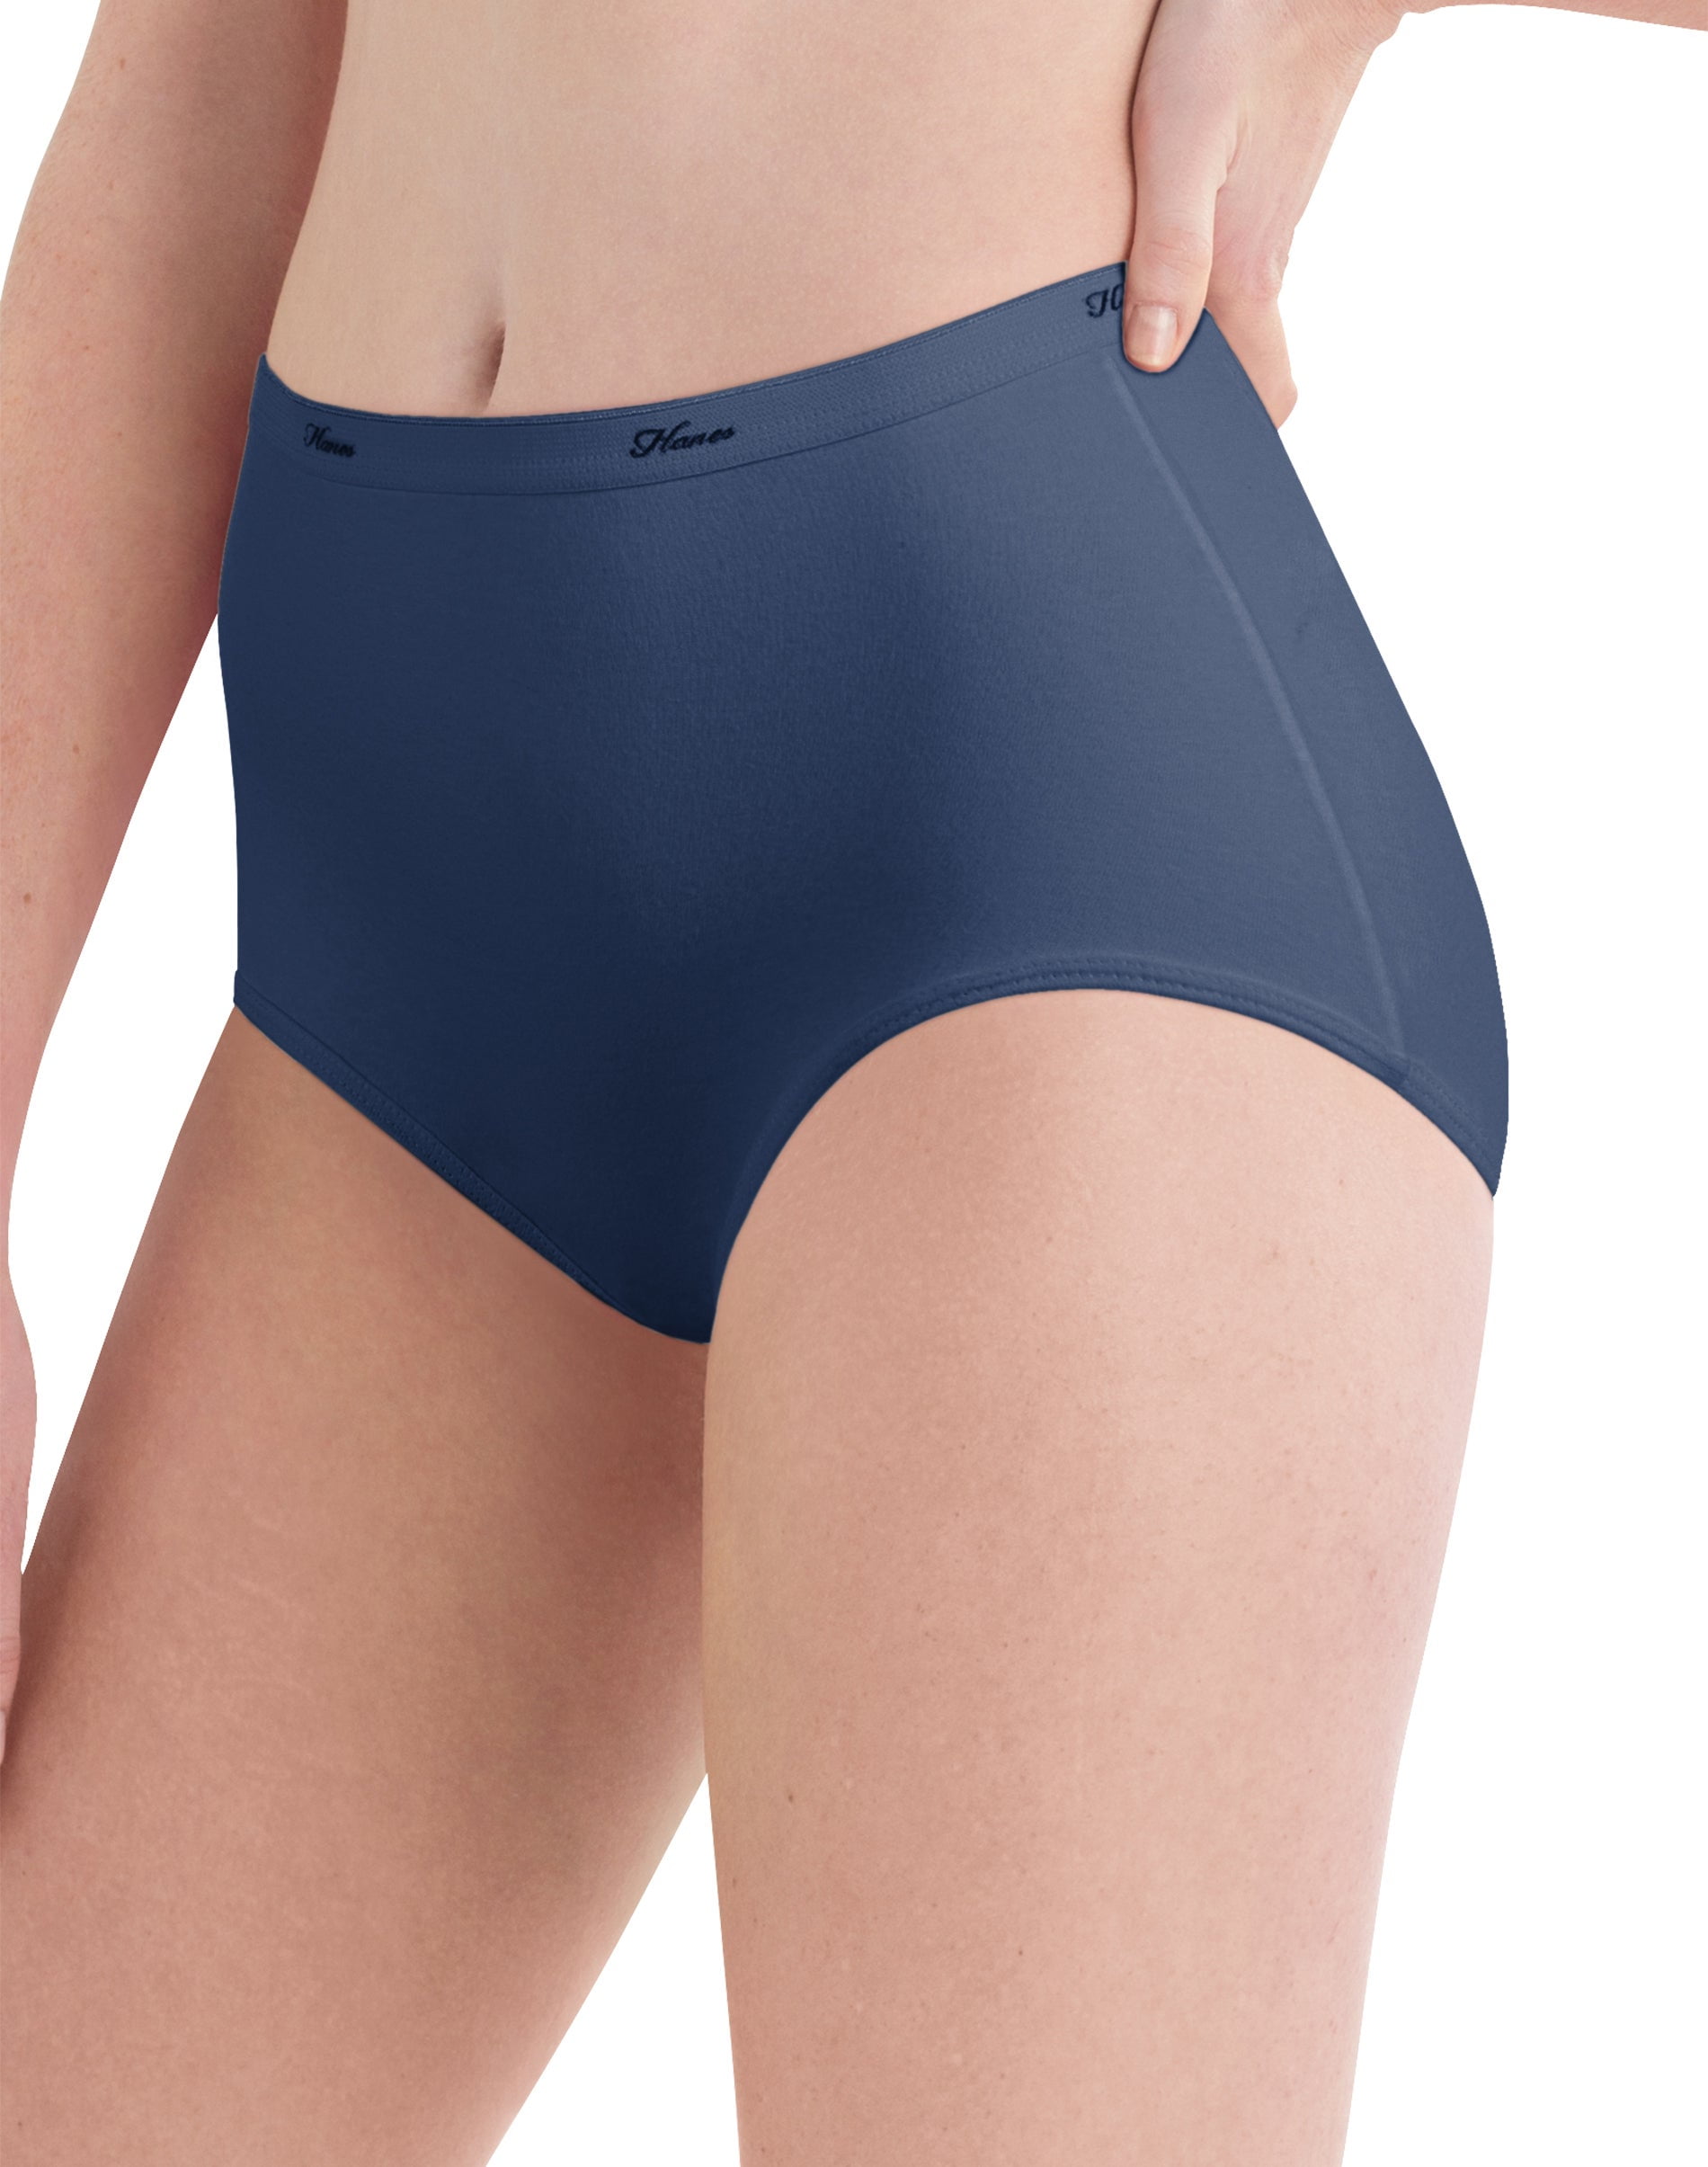 Hanes Womens High-Waisted Briefs Panties Pack, Lightweight